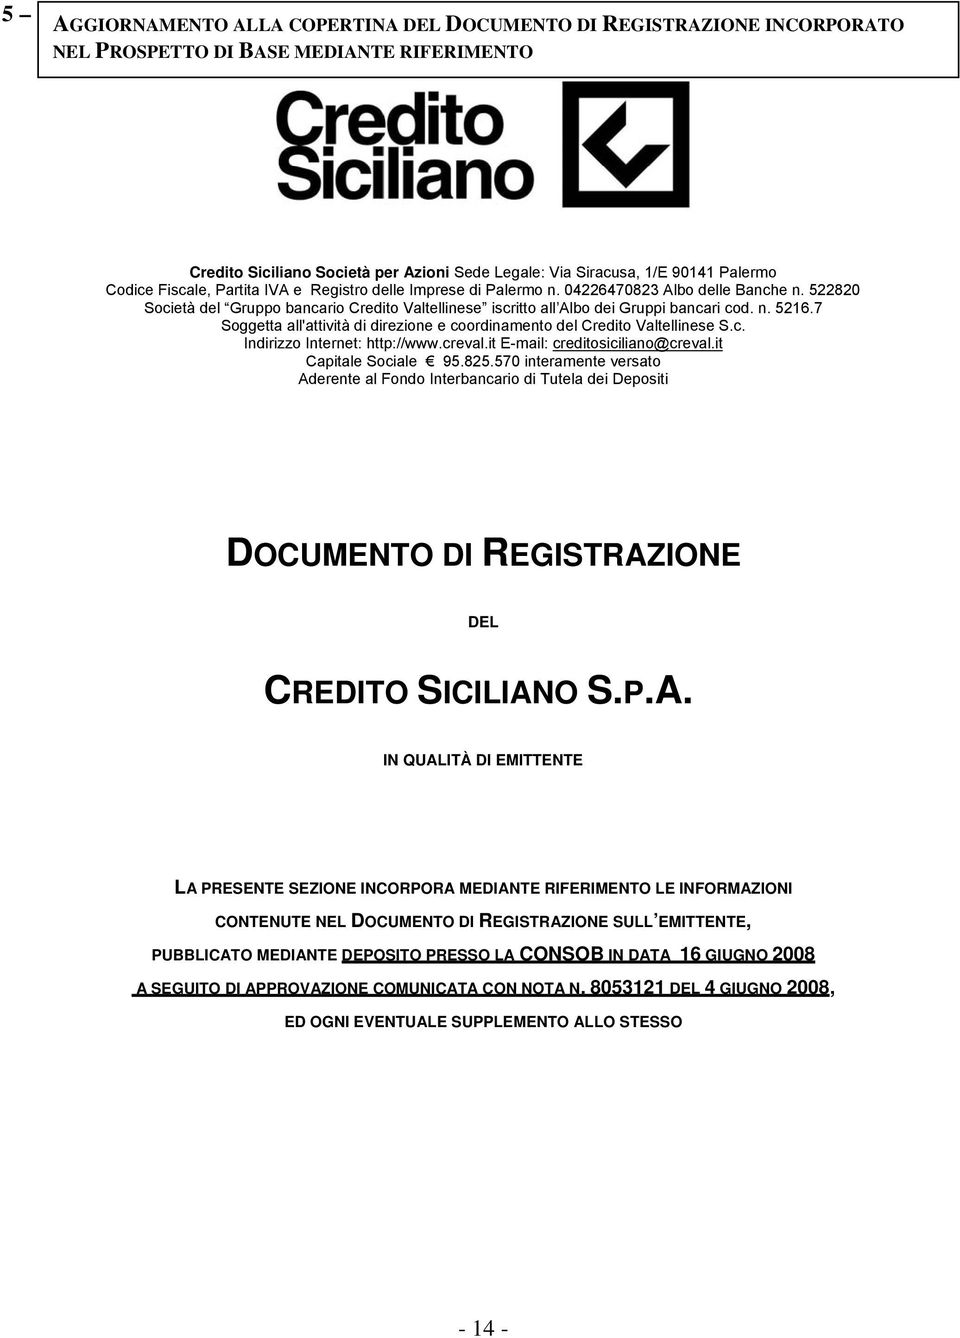 7 Soggetta all'attività di direzione e coordinamento del Credito Valtellinese S.c. Indirizzo Internet: http://www.creval.it E-mail: creditosiciliano@creval.it Capitale Sociale 95.825.